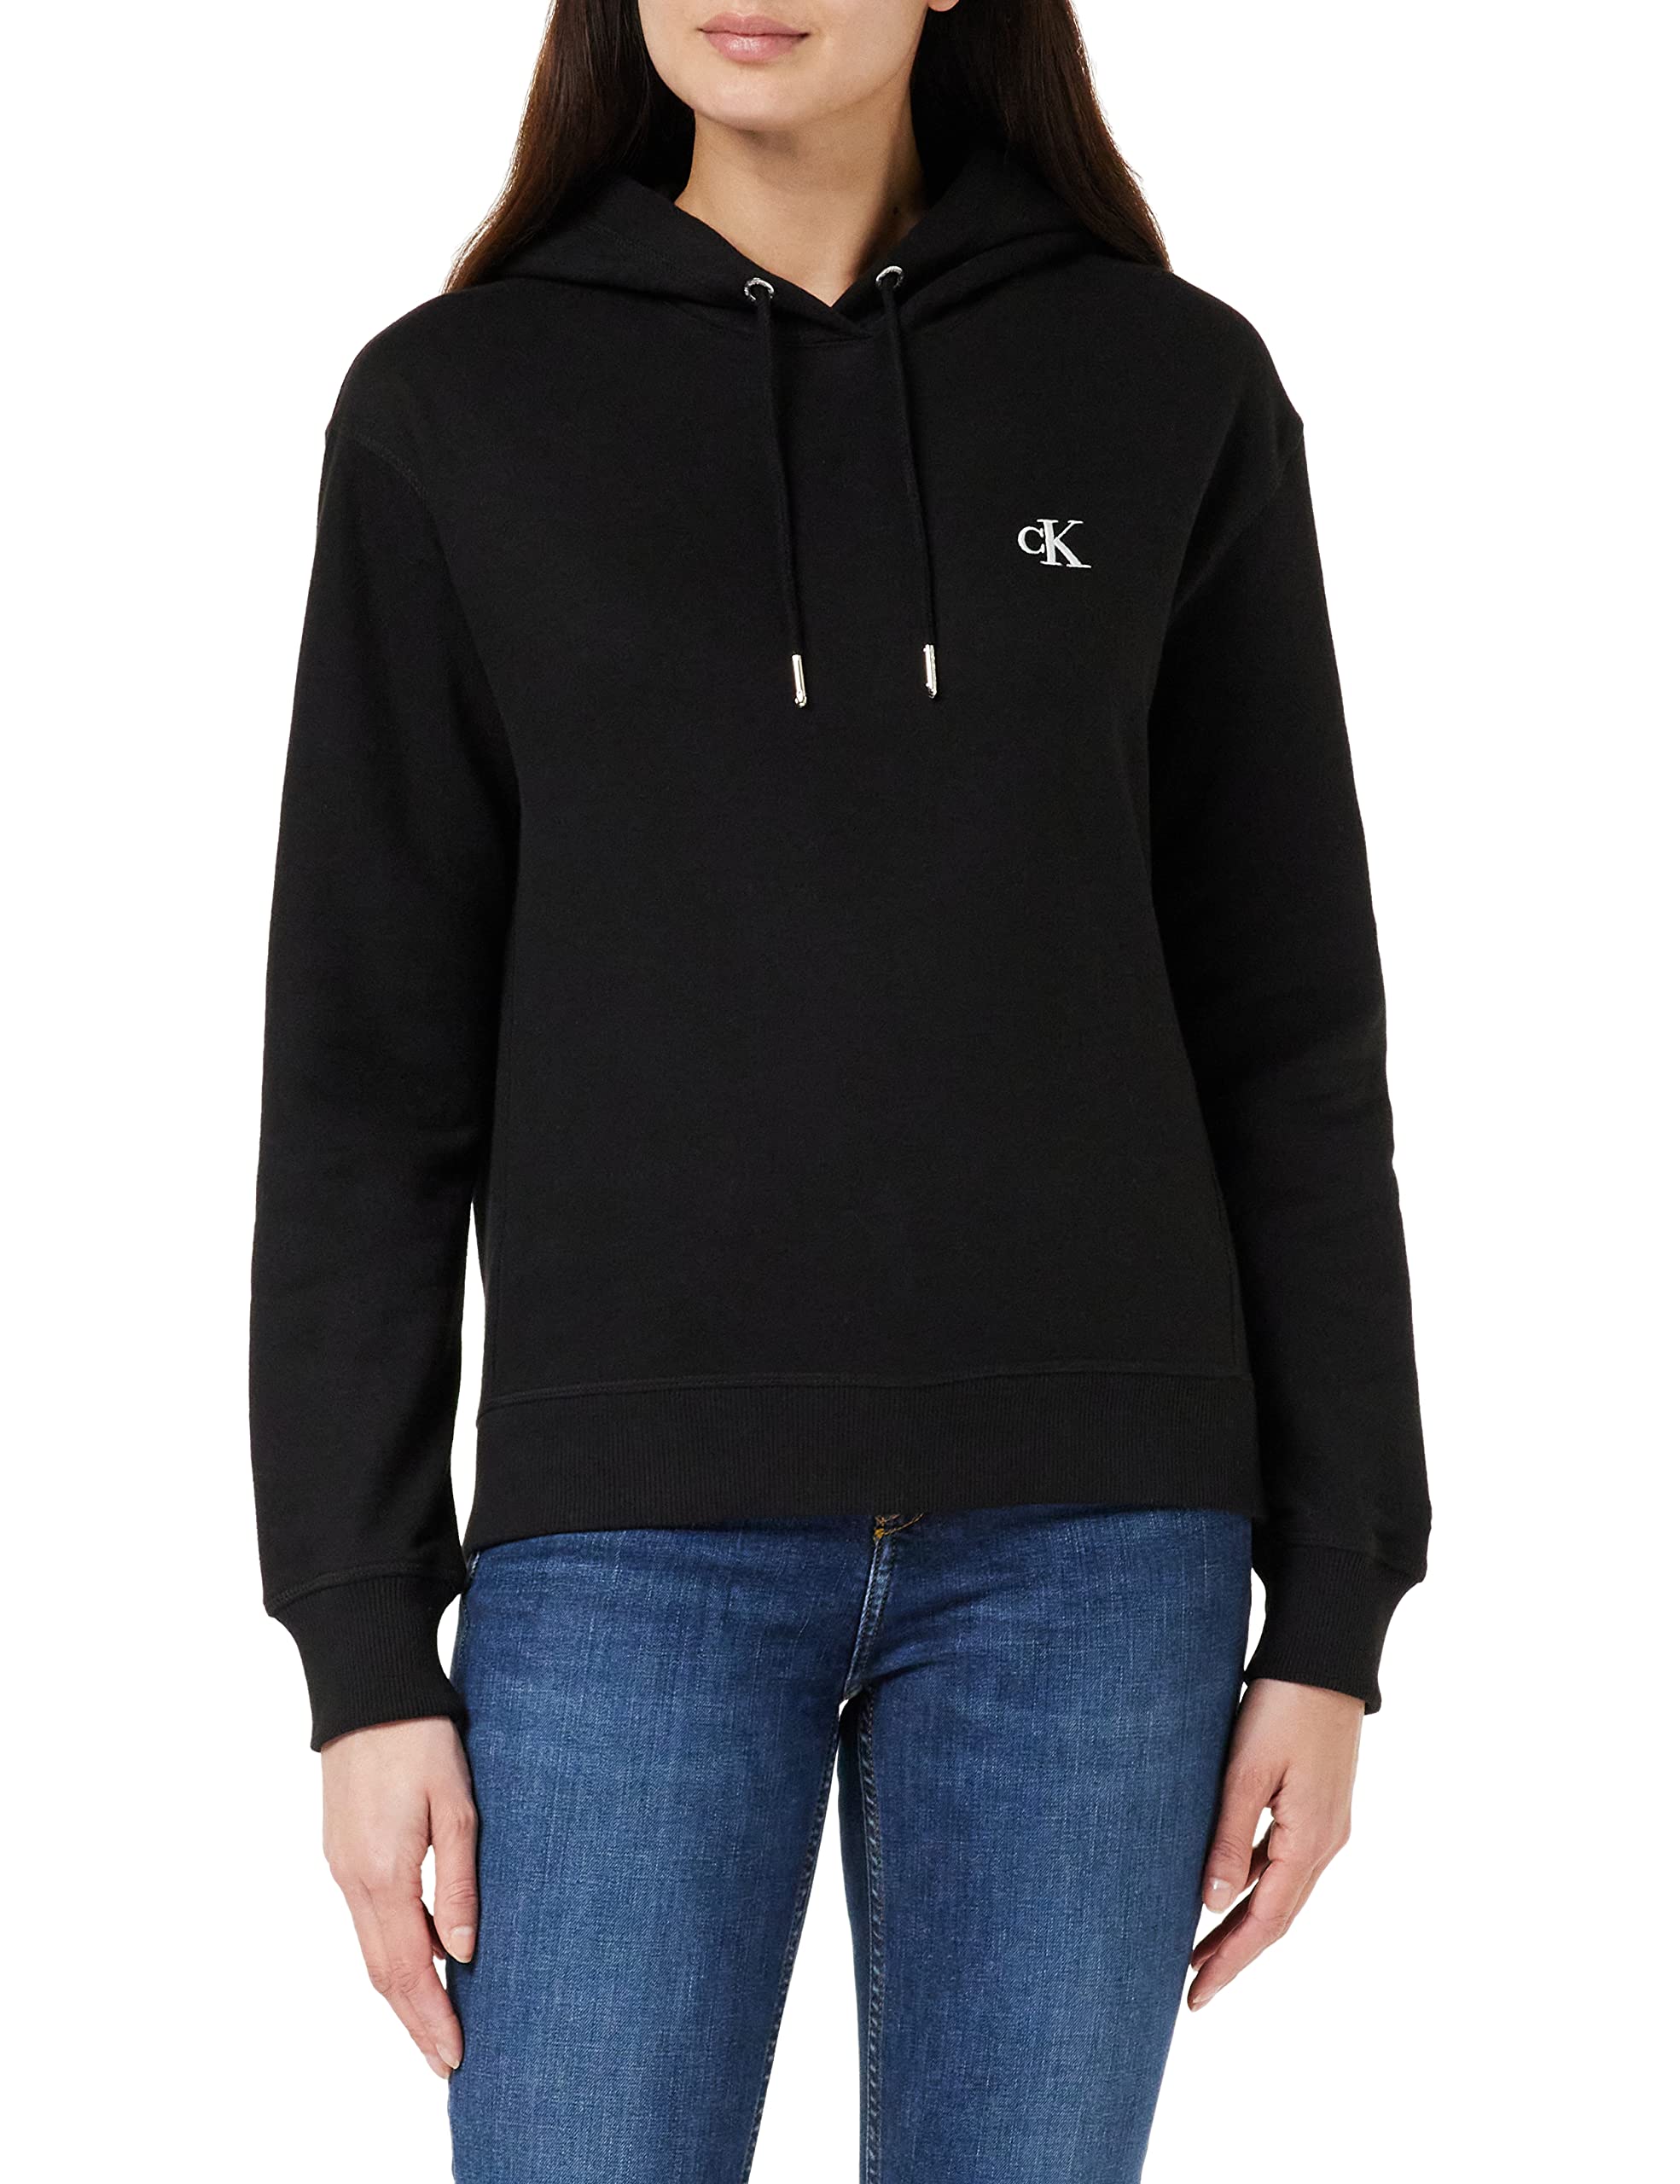 Calvin Klein Jeans Damen Sweatshirt Ck Embroidery mit Kapuze, Schwarz (Ck Black), XS